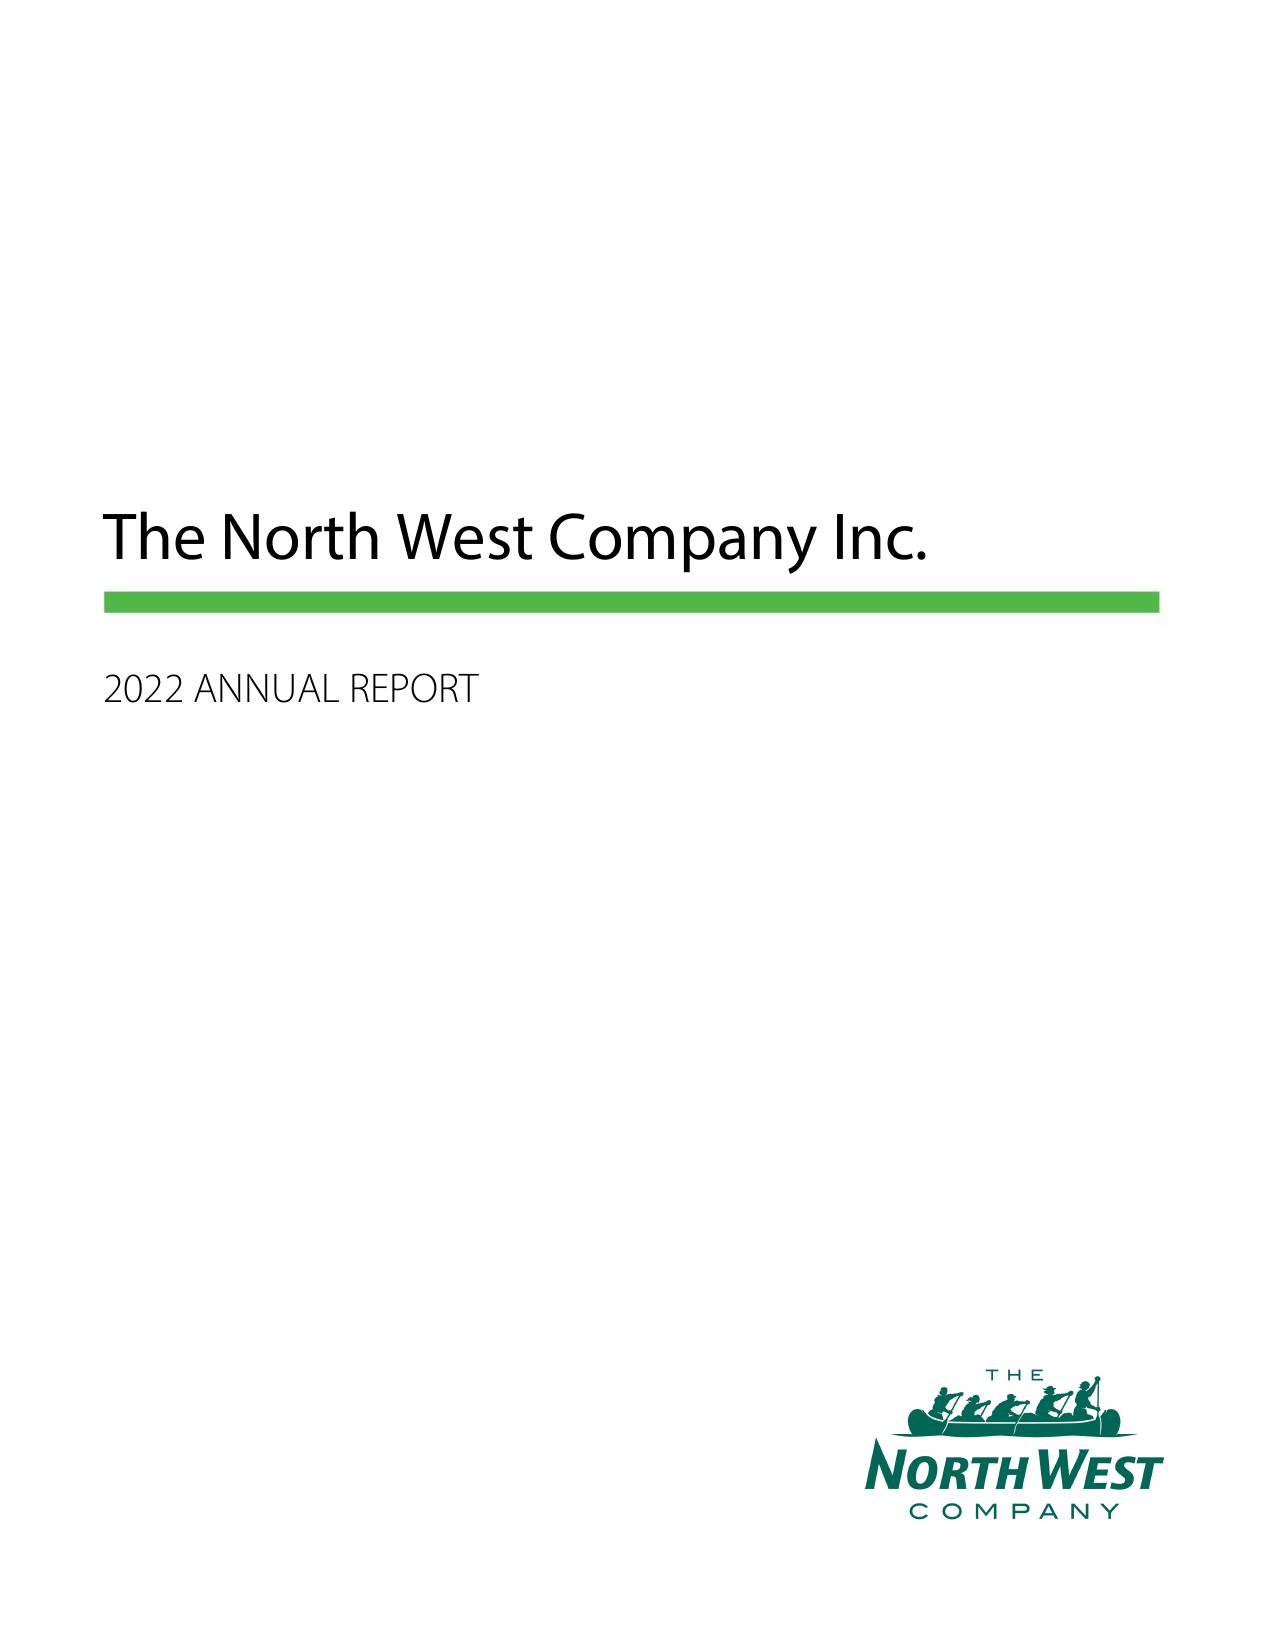 NORTHWEST 2022 Annual Report